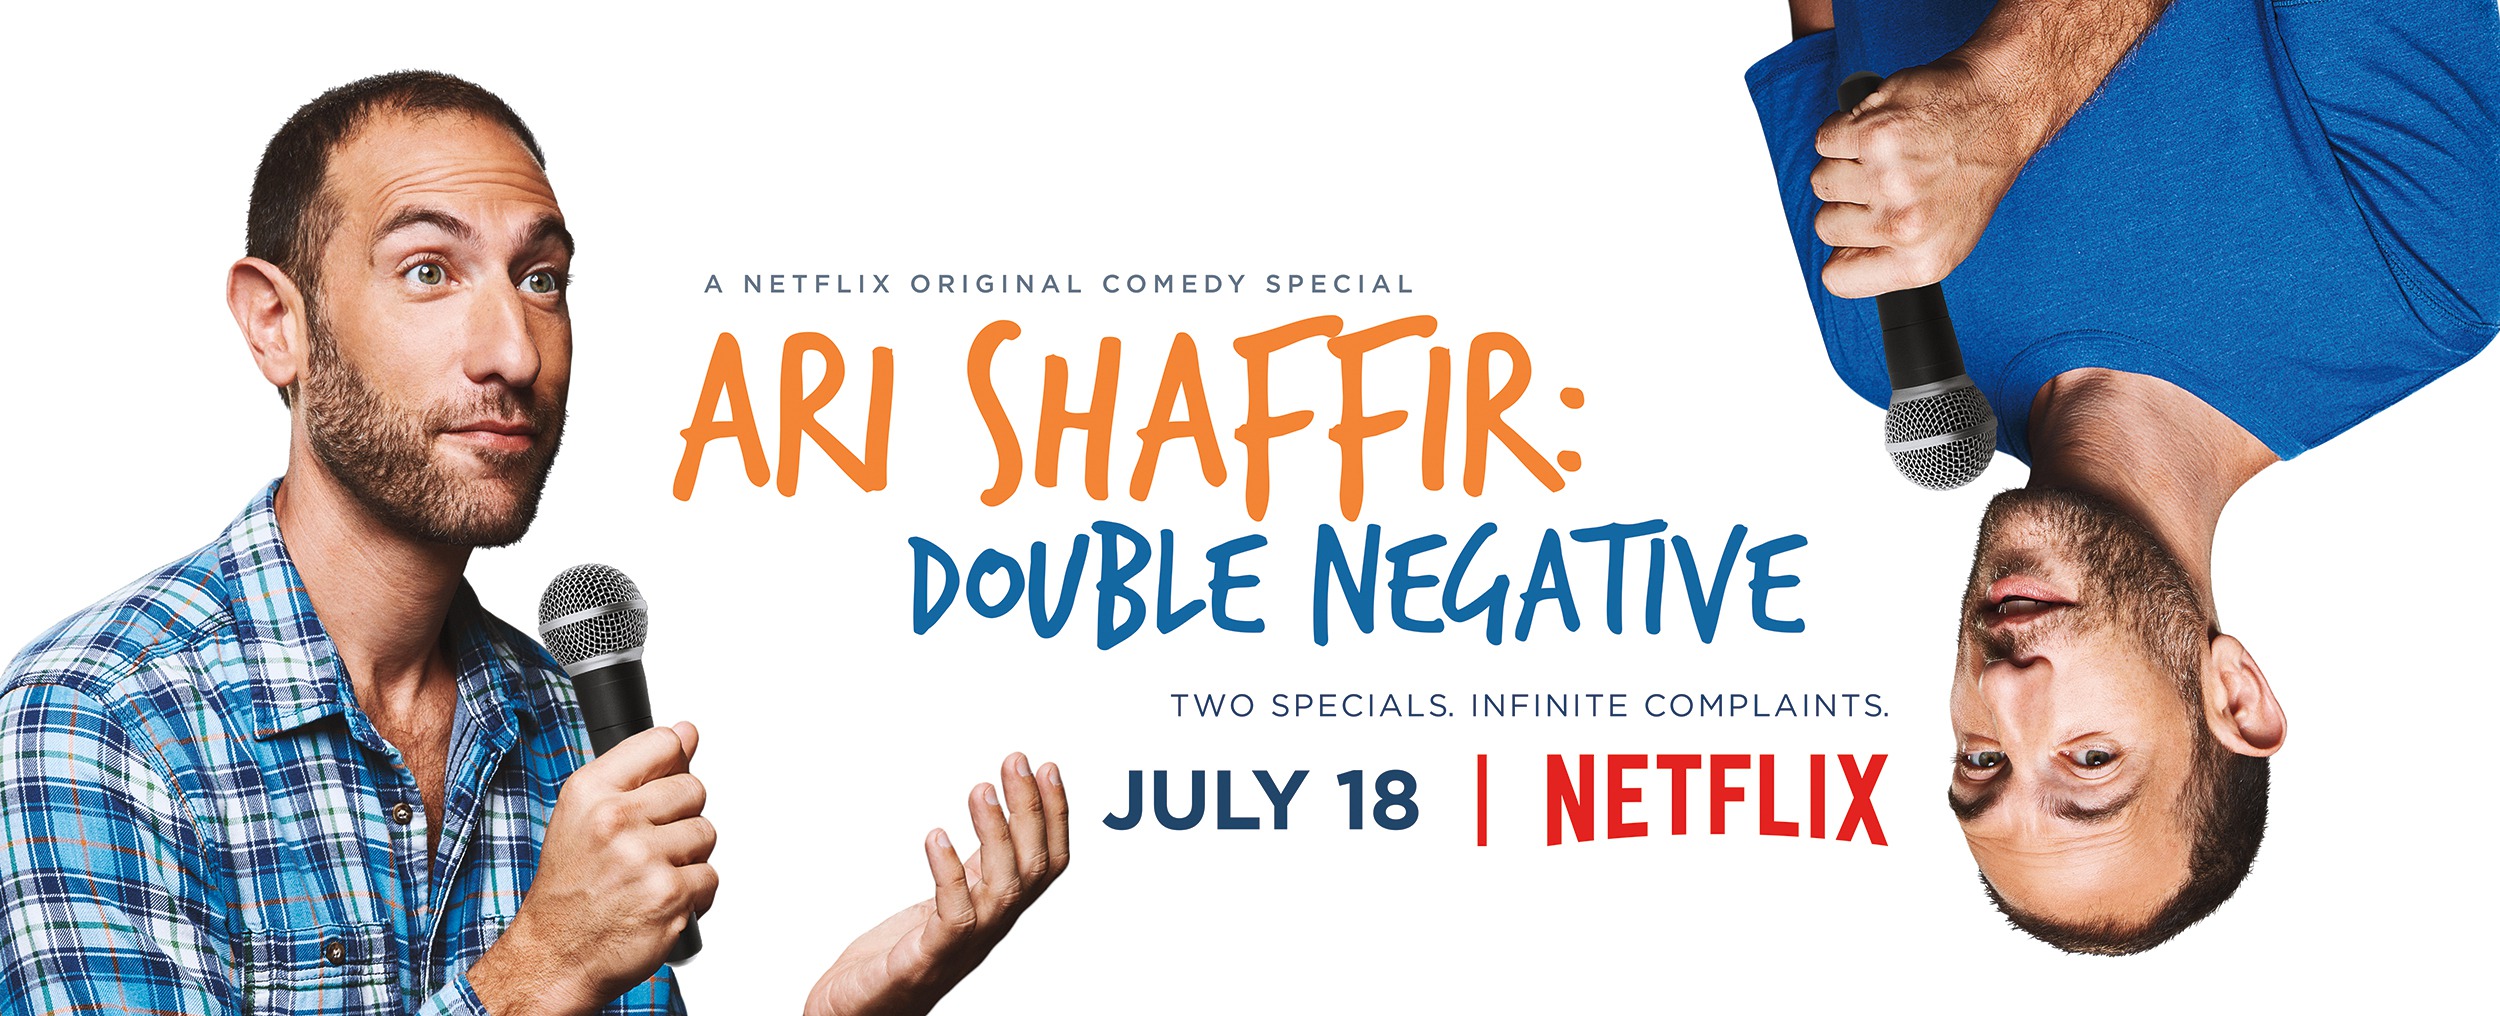 Mega Sized TV Poster Image for Ari Shaffir: Double Negative 